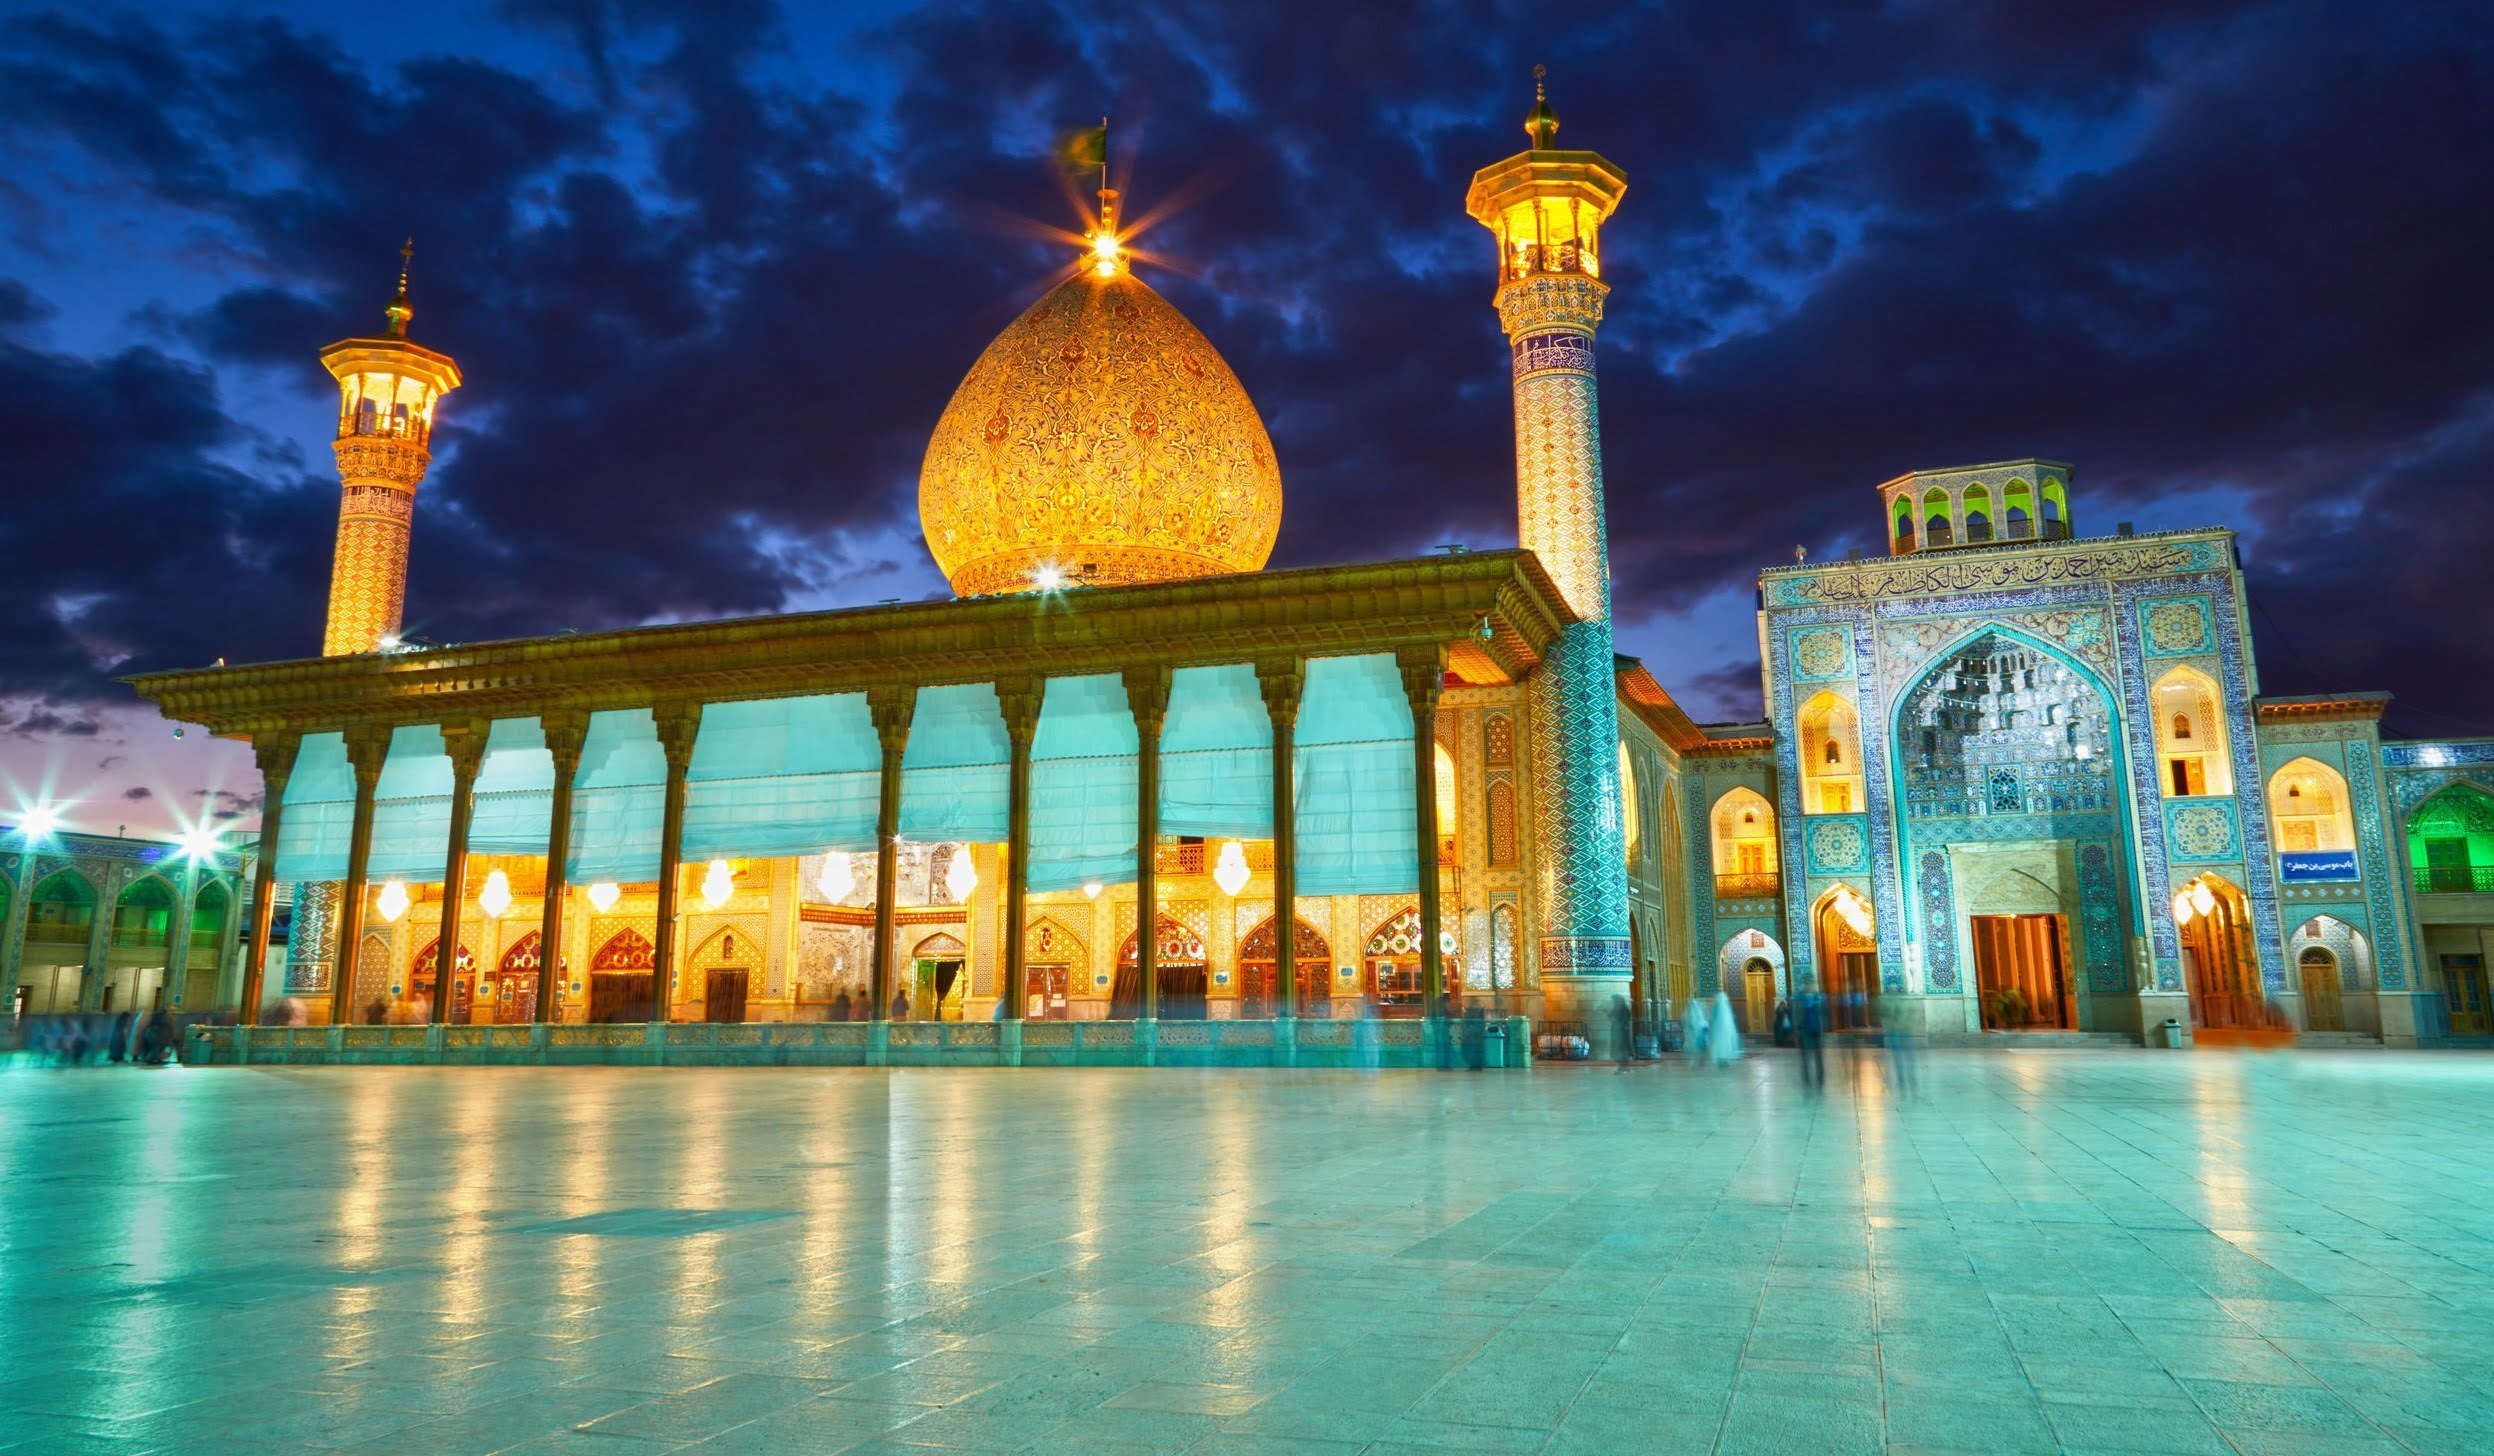 Shah Cheragh mosque after sunset. Shiraz, Iran